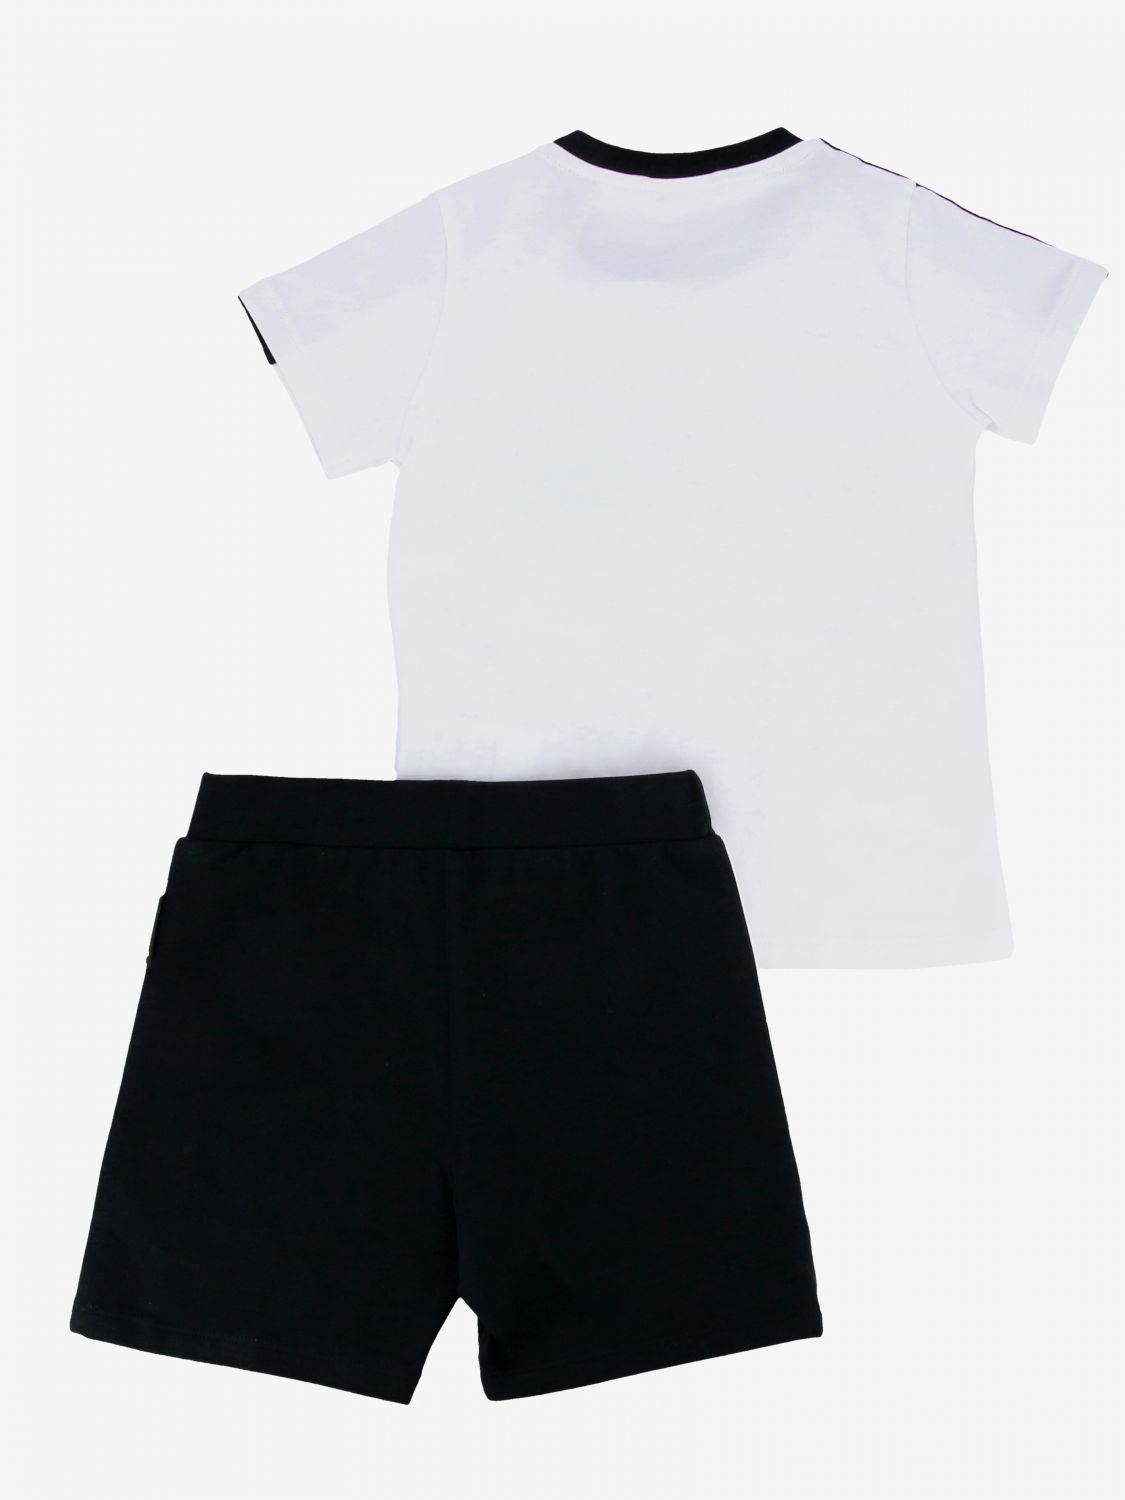 moncler shorts and shirt set